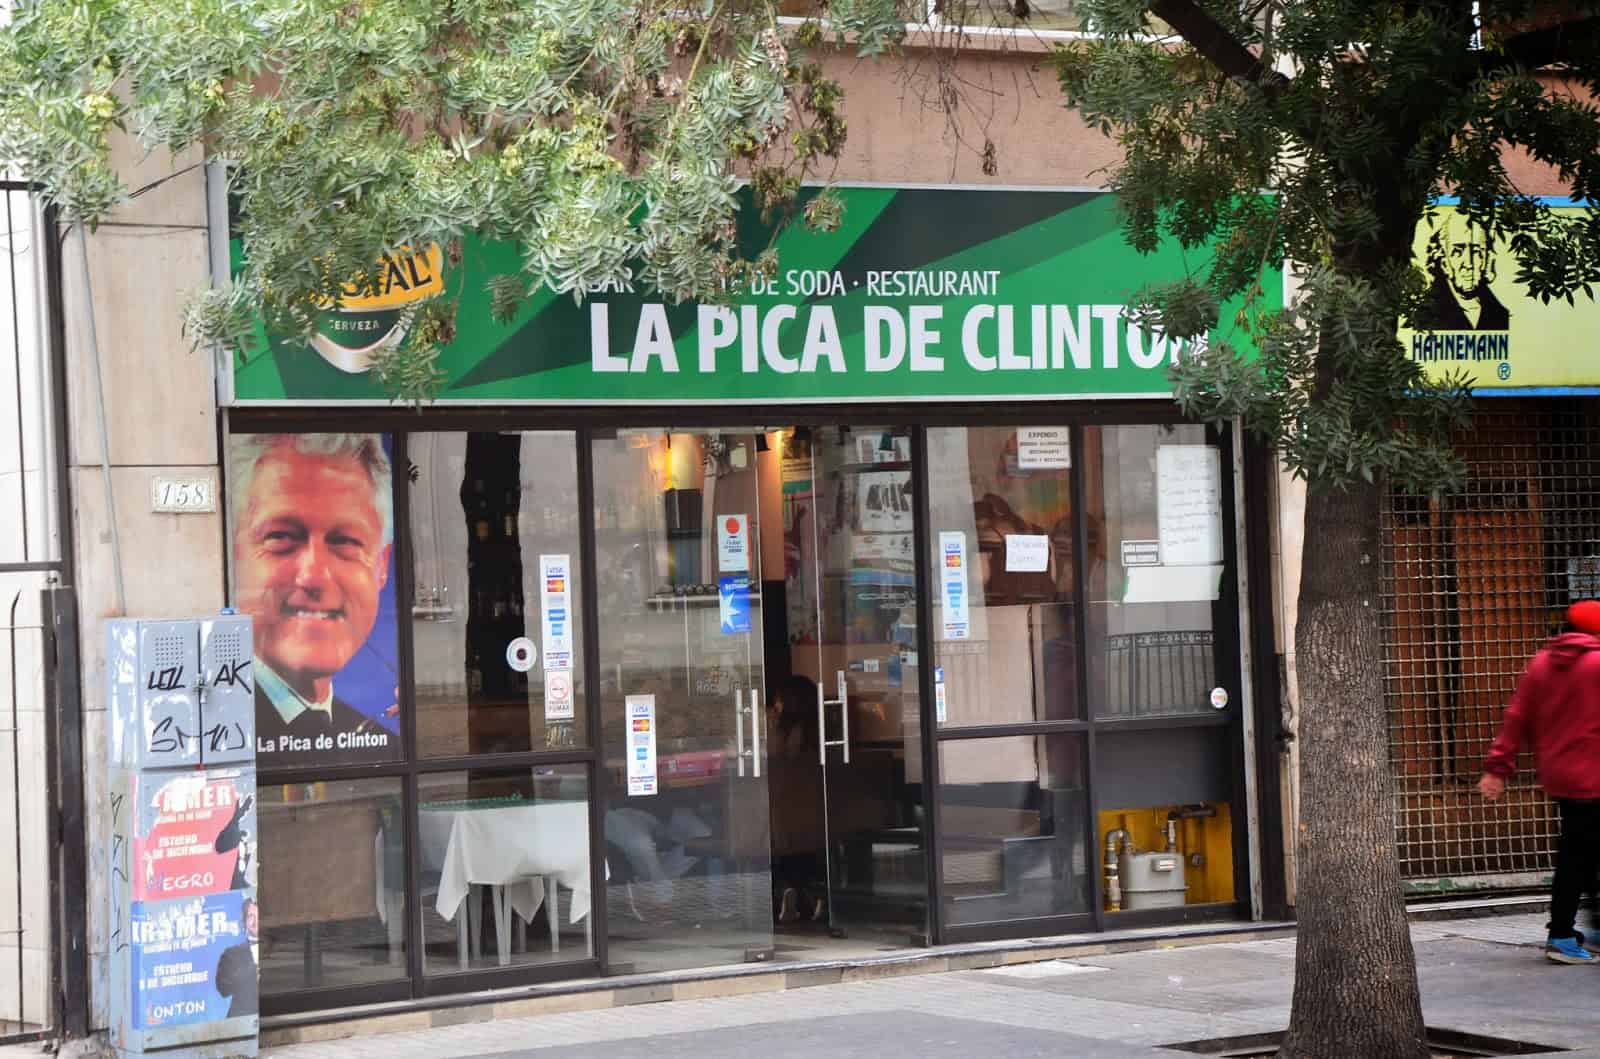 La Pica de Clinton in Santiago de Chile